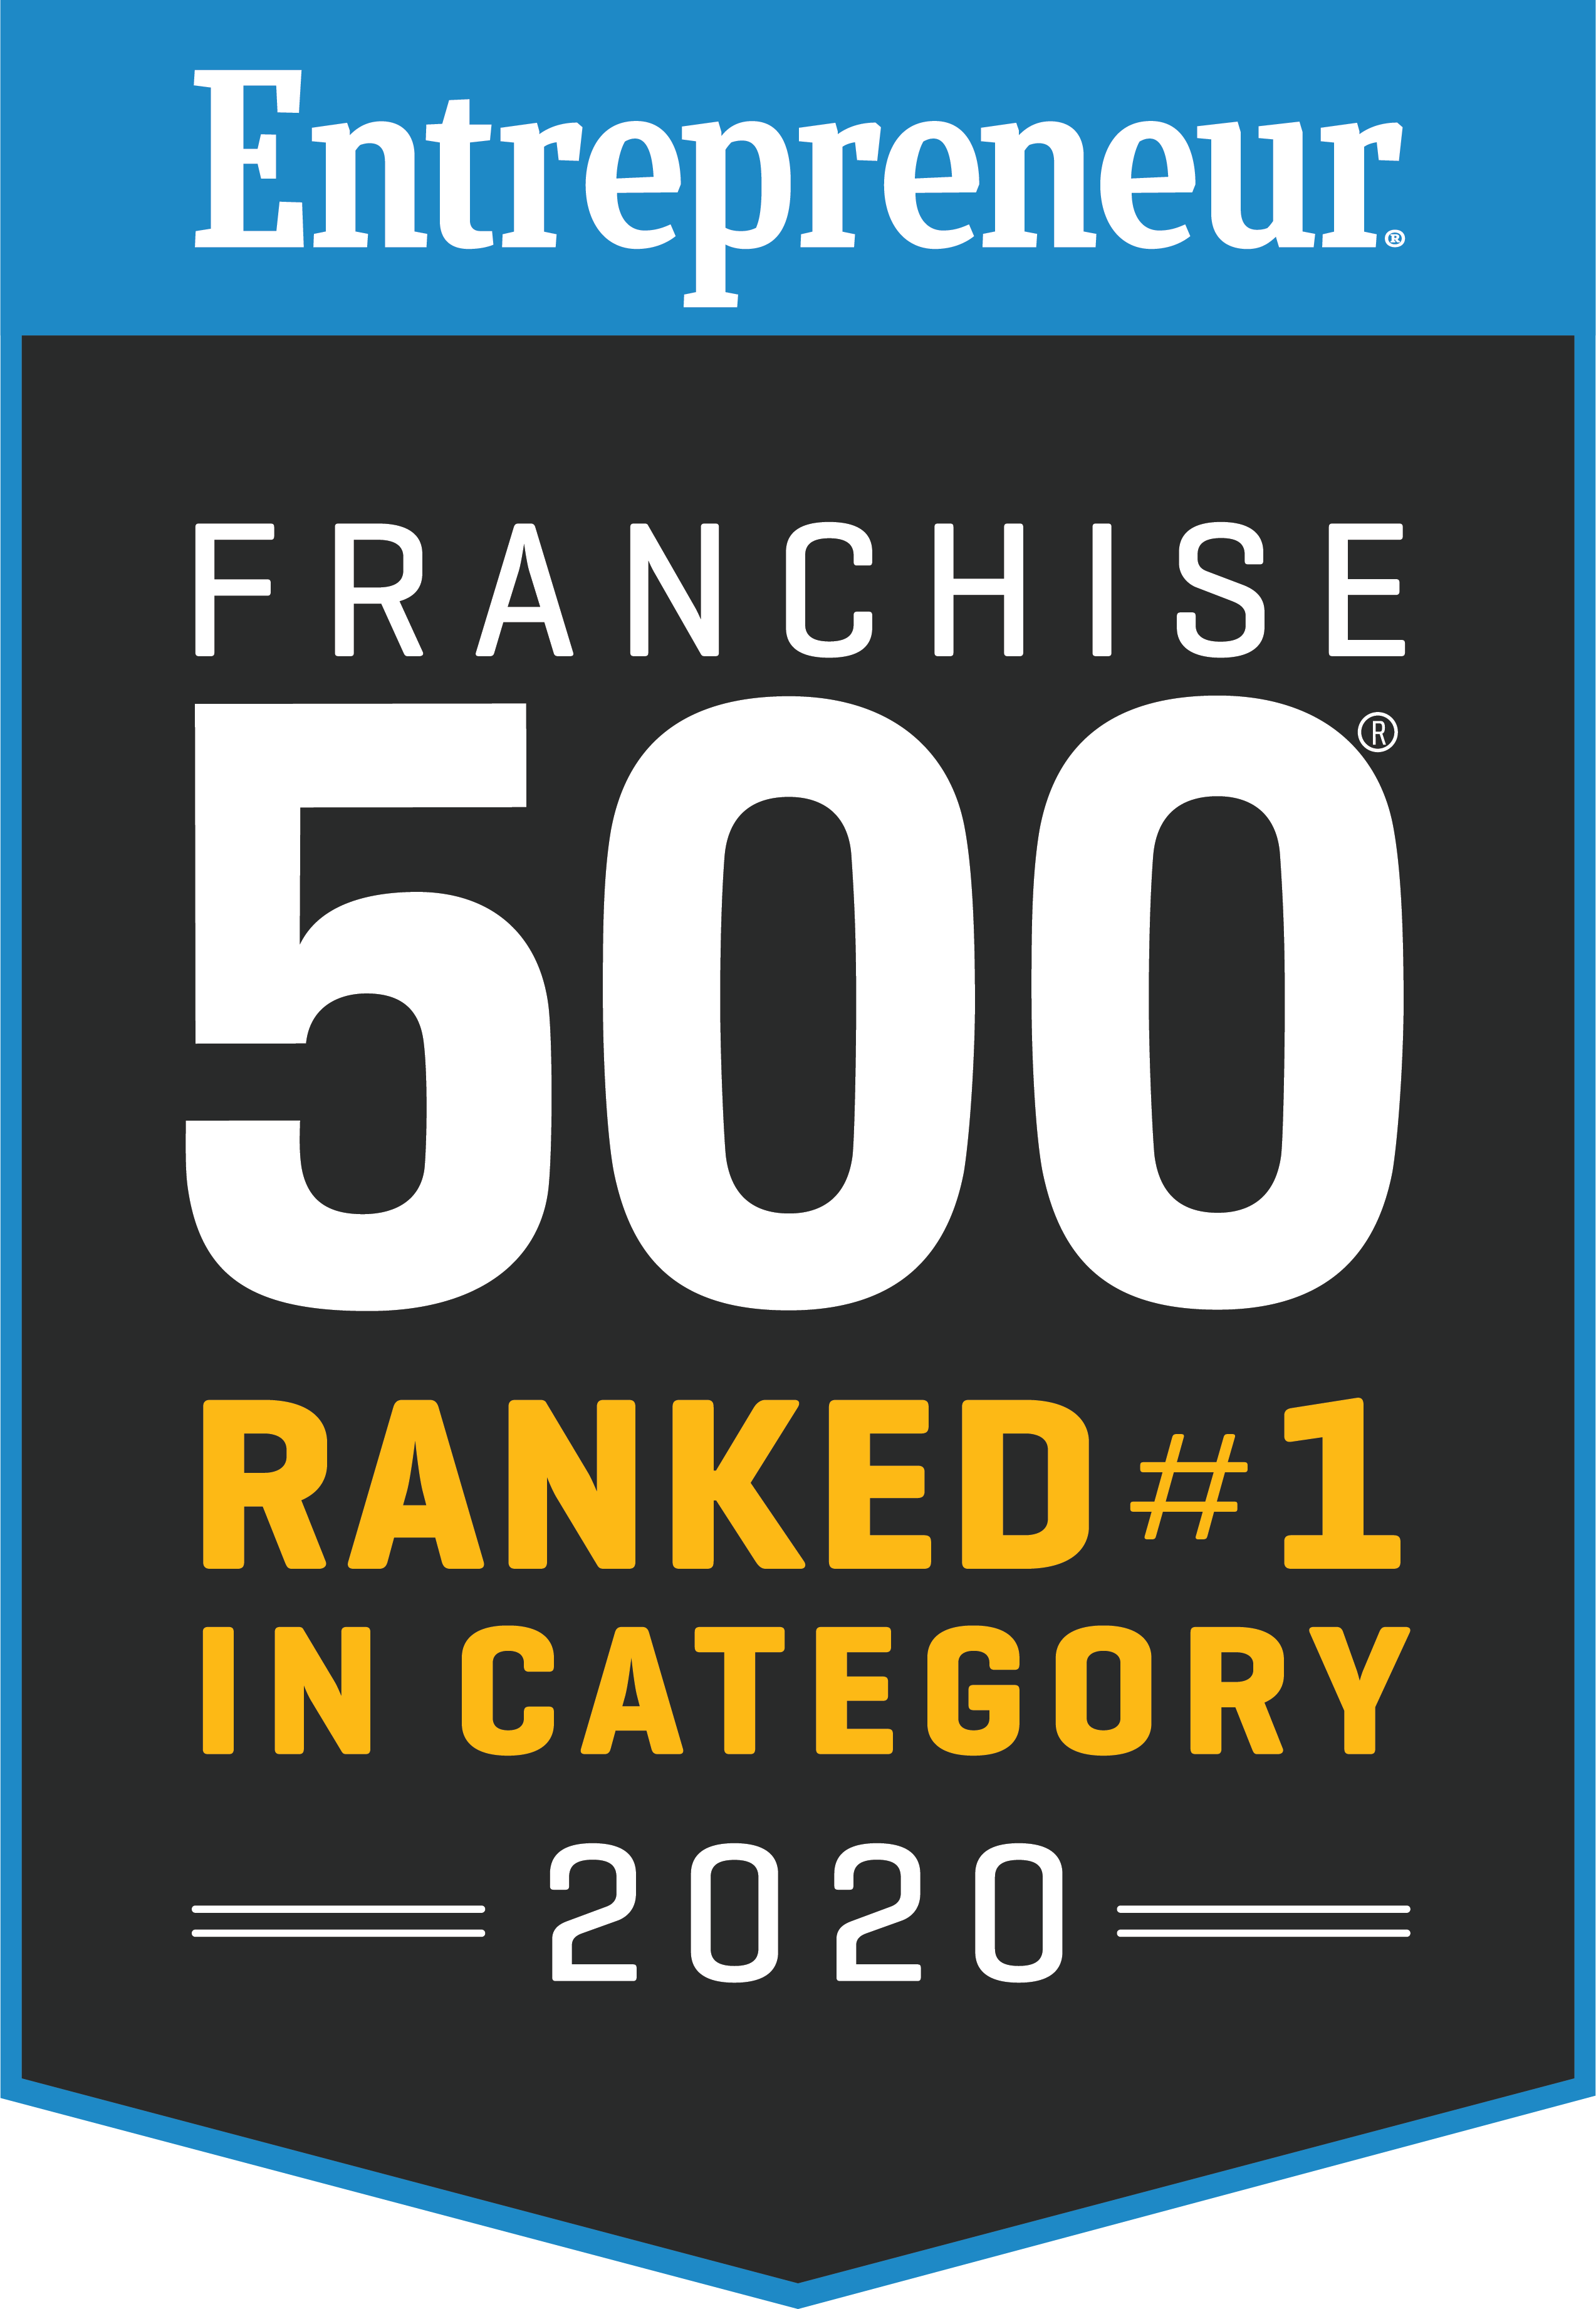 Entrepreneur Franchise 500 #1 in category for 2020 logo